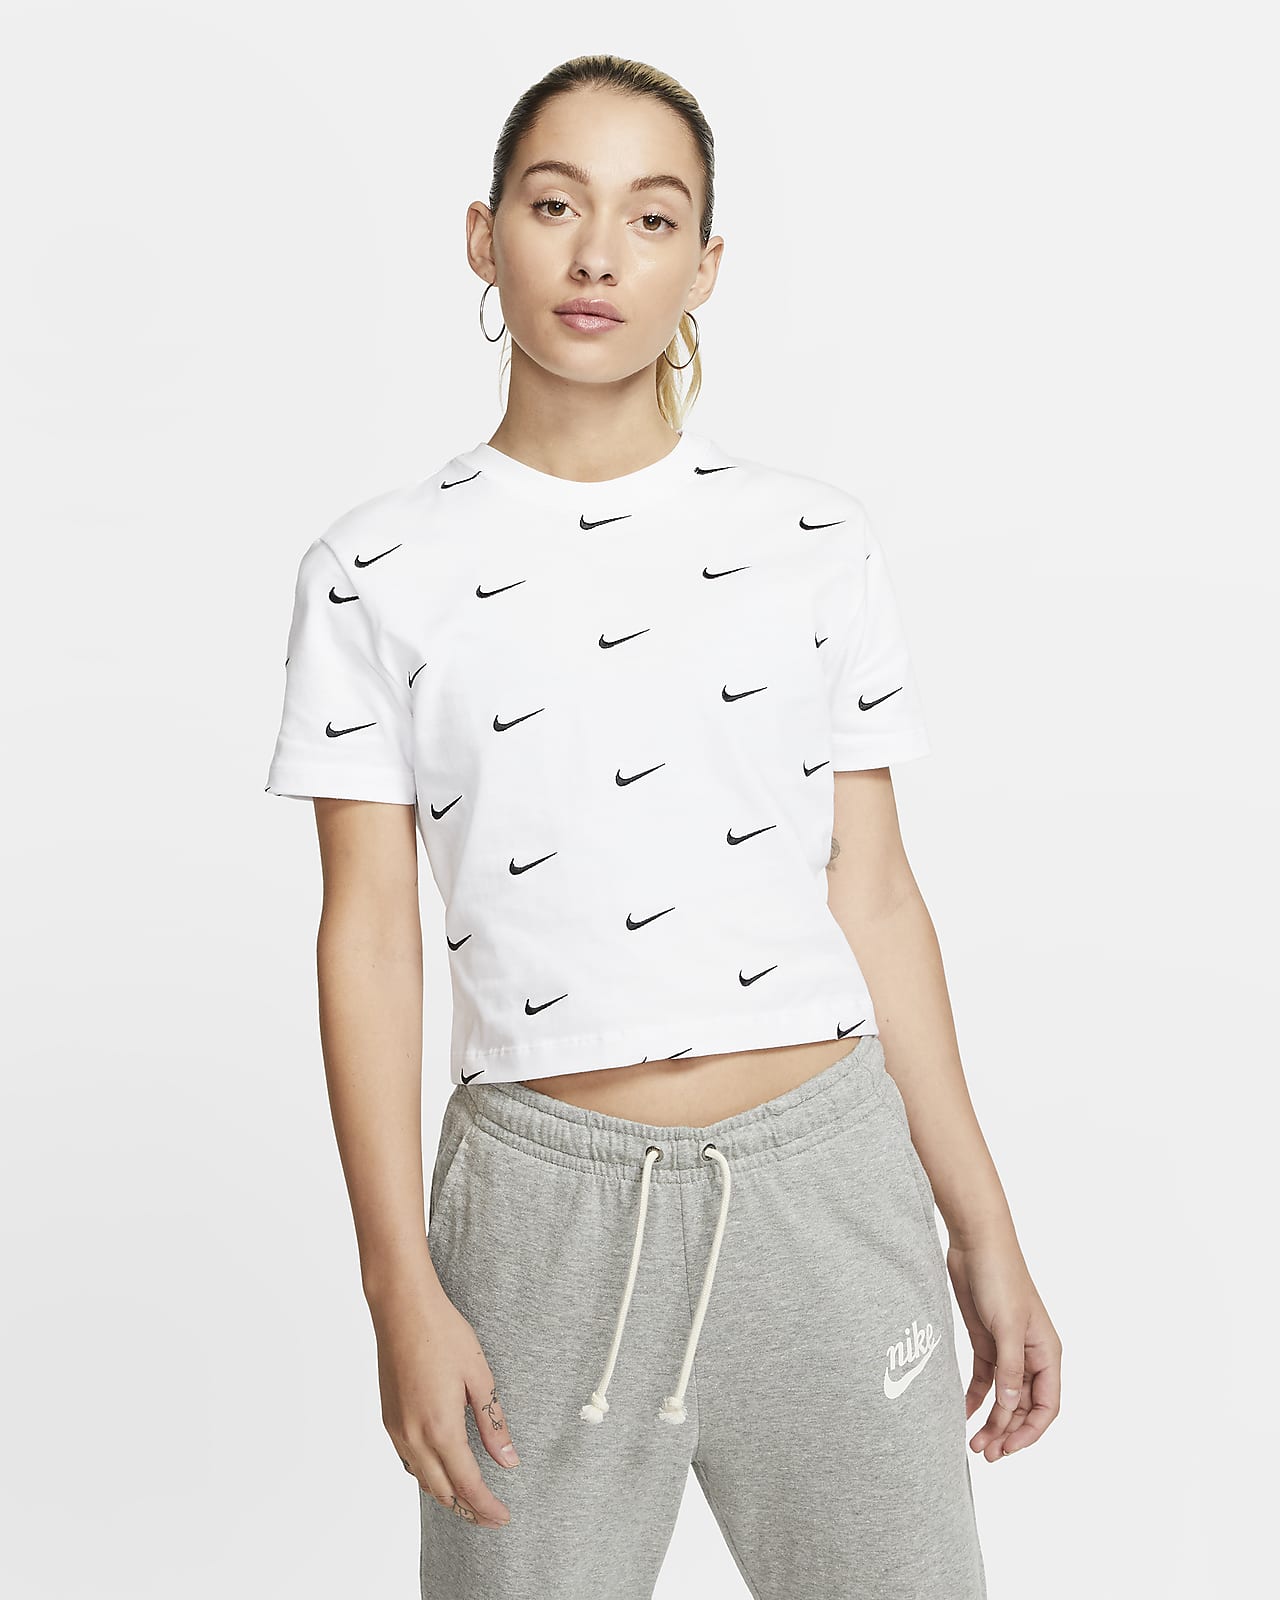 Nike Women's Swoosh Logo T-Shirt